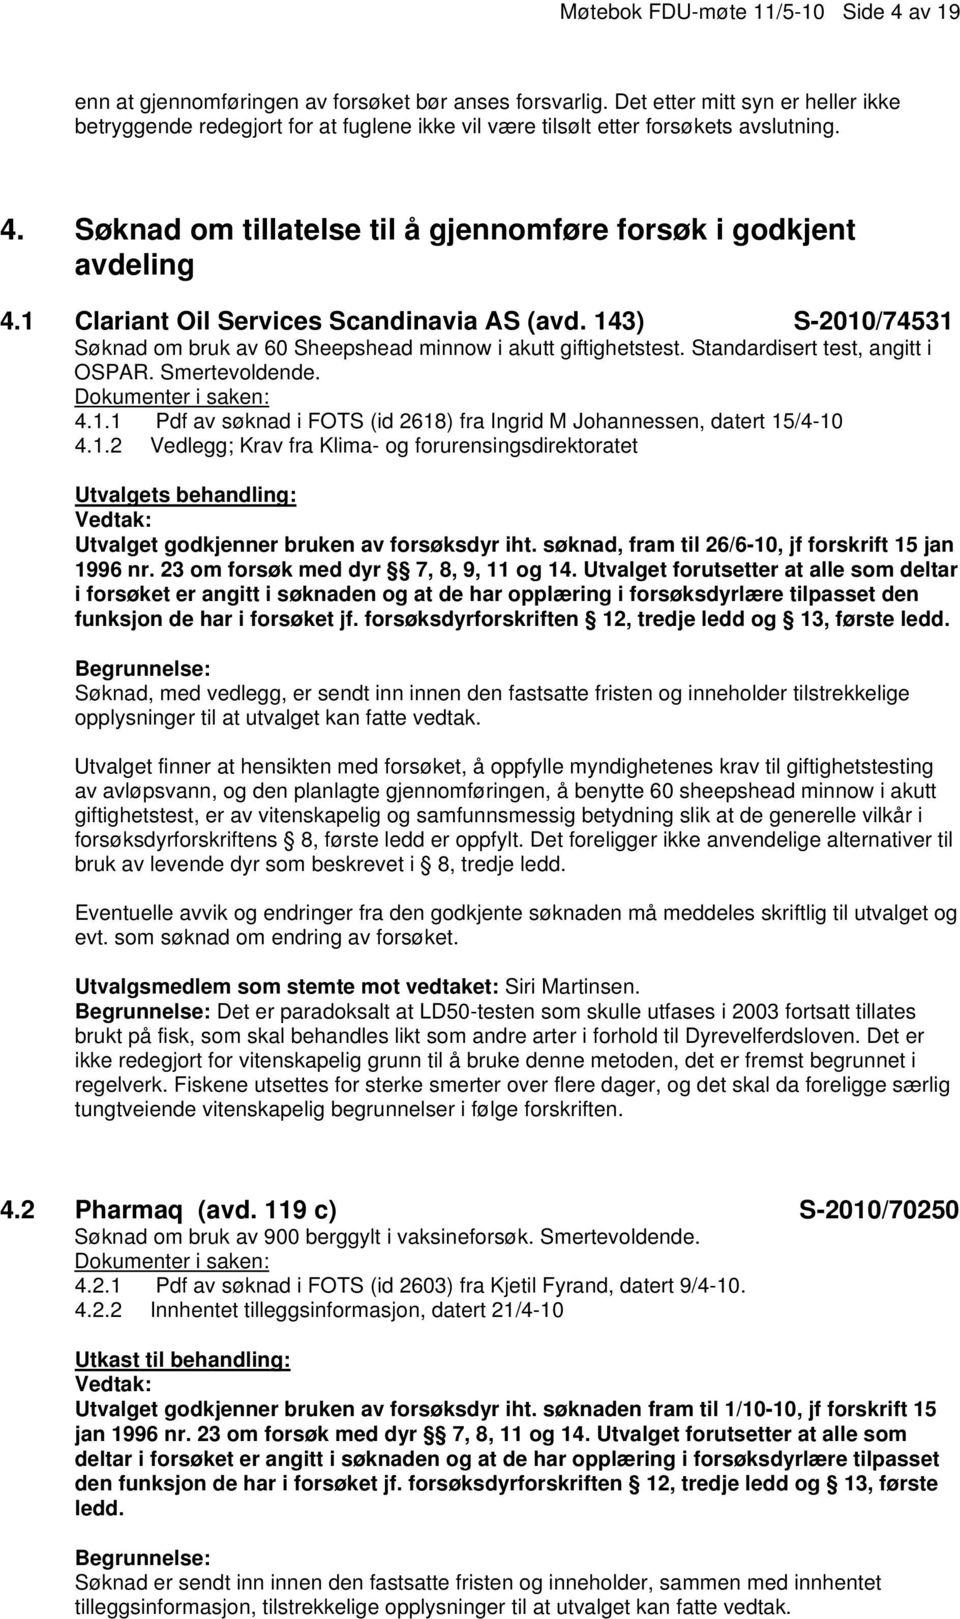 1 Clariant Oil Services Scandinavia AS (avd. 143) S-2010/74531 Søknad om bruk av 60 Sheepshead minnow i akutt giftighetstest. Standardisert test, angitt i OSPAR. Smertevoldende. 4.1.1 Pdf av søknad i FOTS (id 2618) fra Ingrid M Johannessen, datert 15/4-10 4.